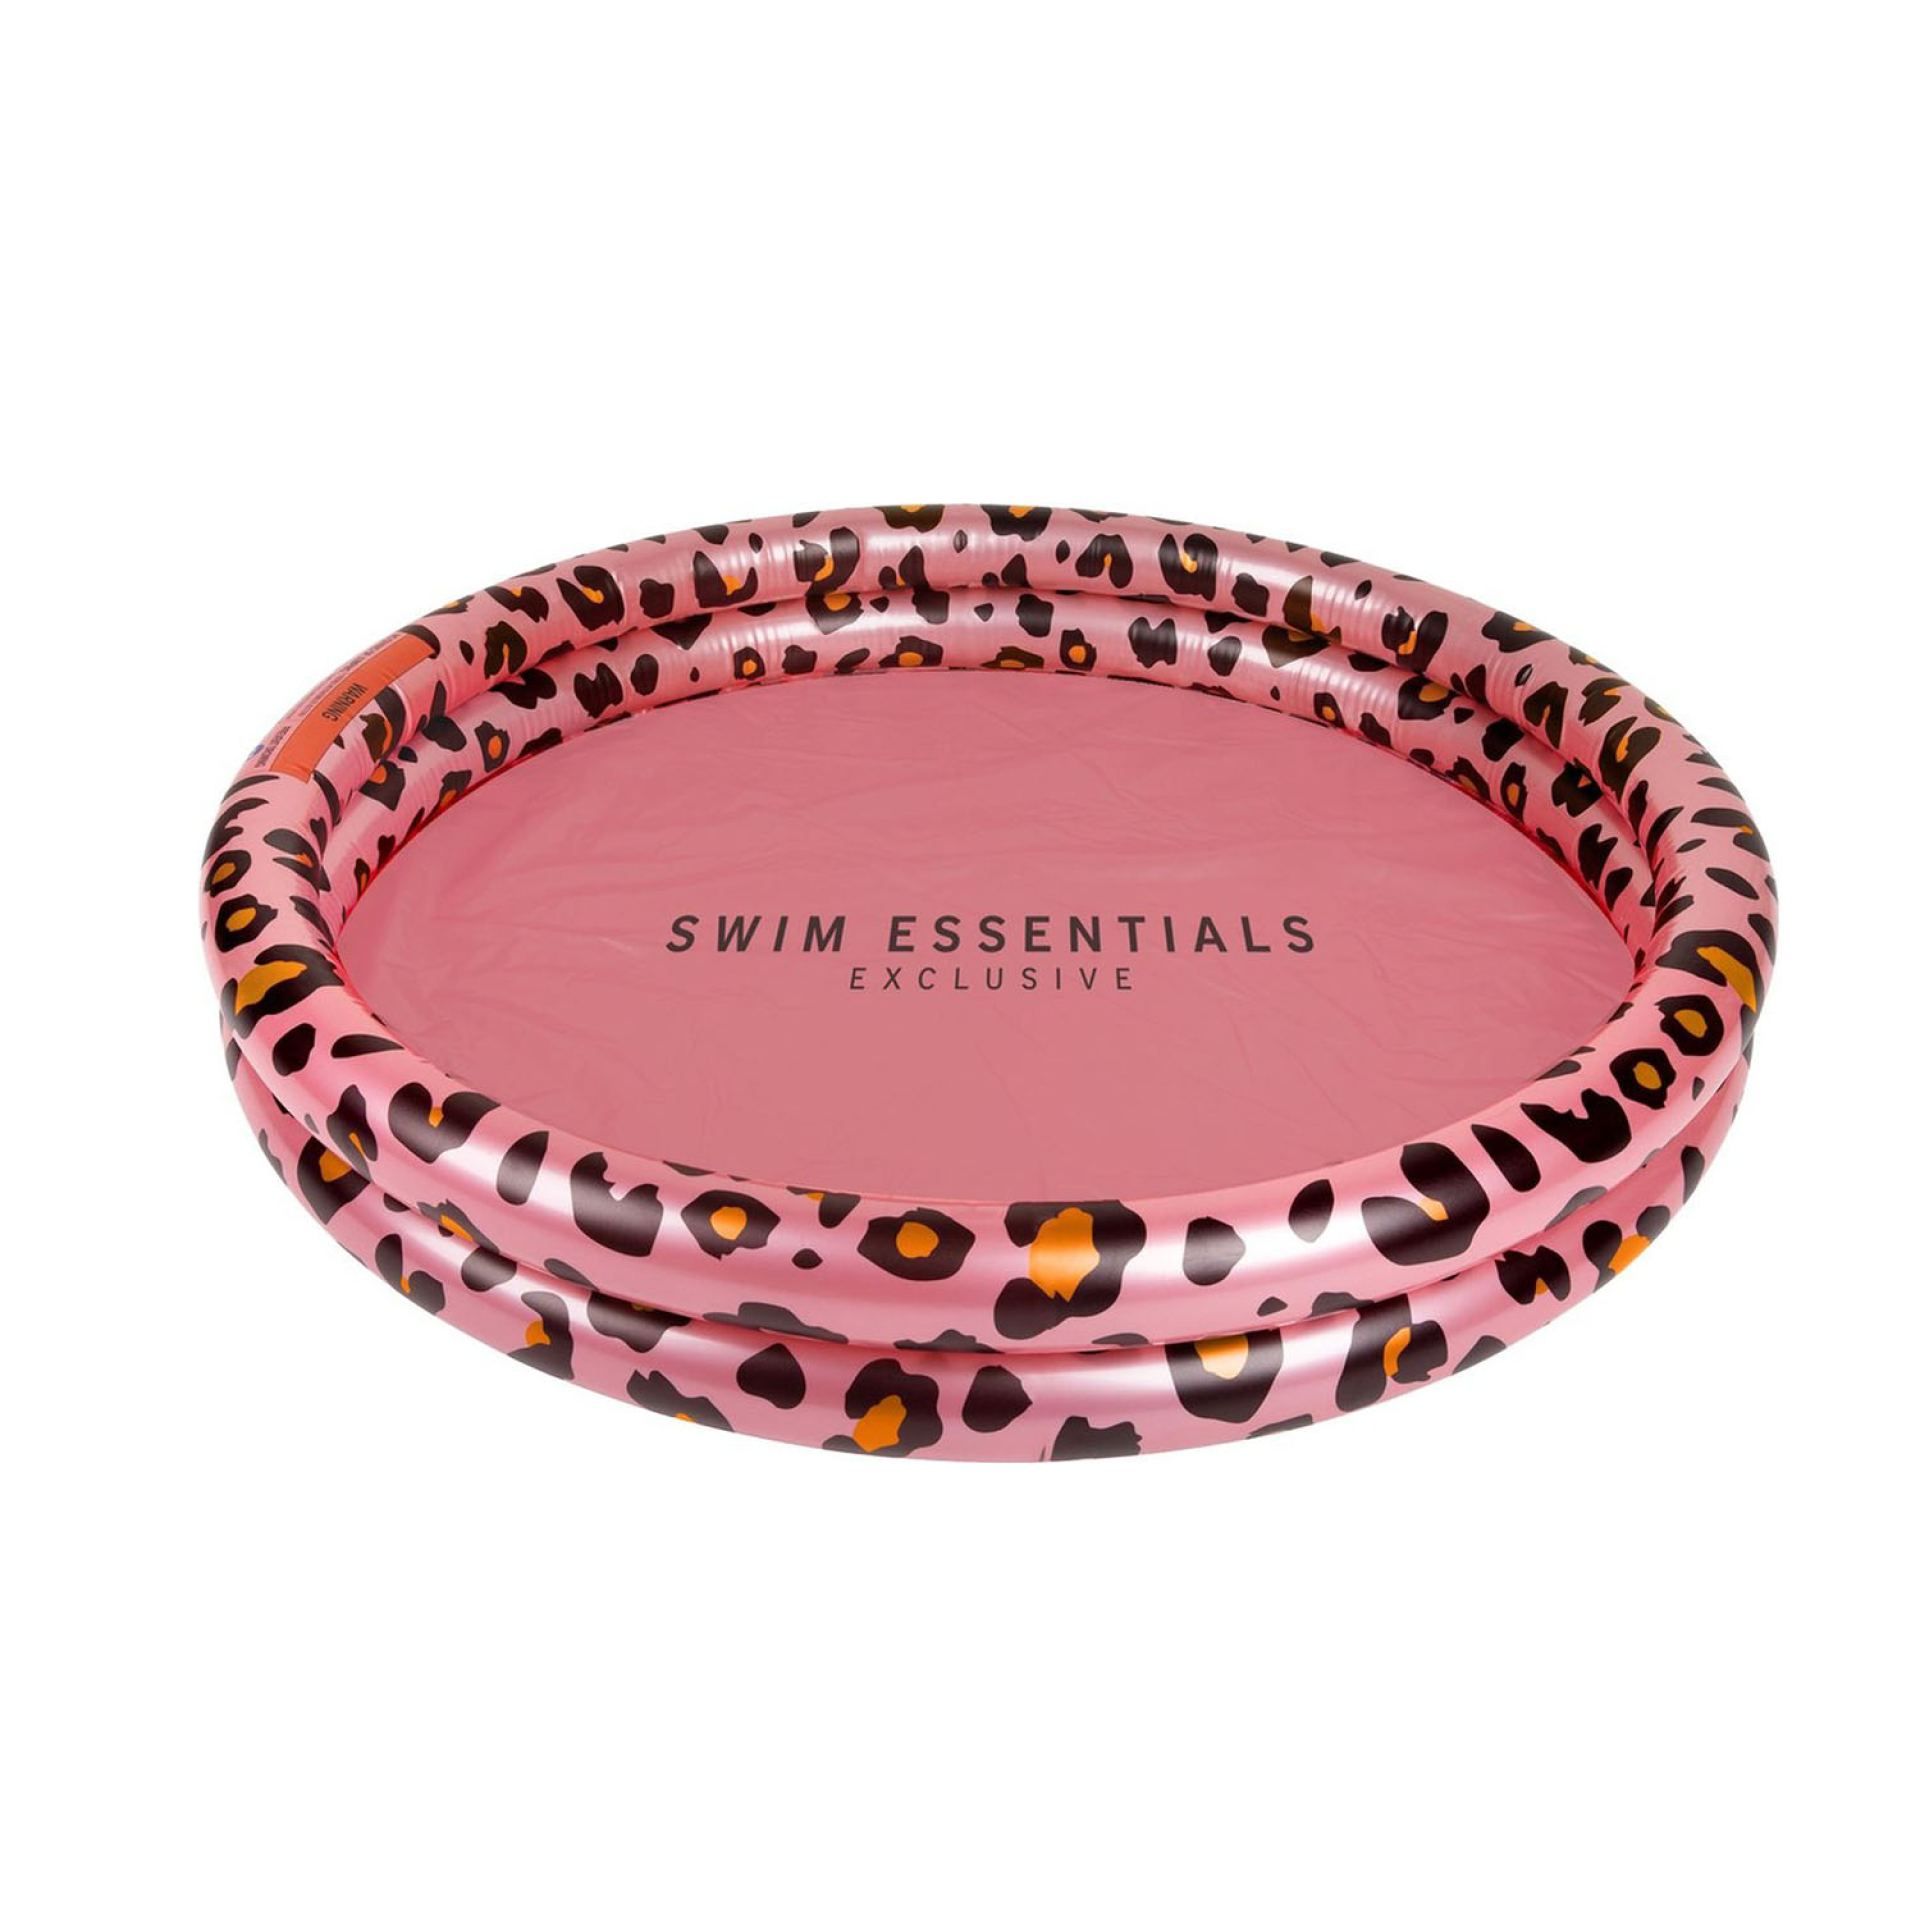 Swim essentials luidpaard rose goud